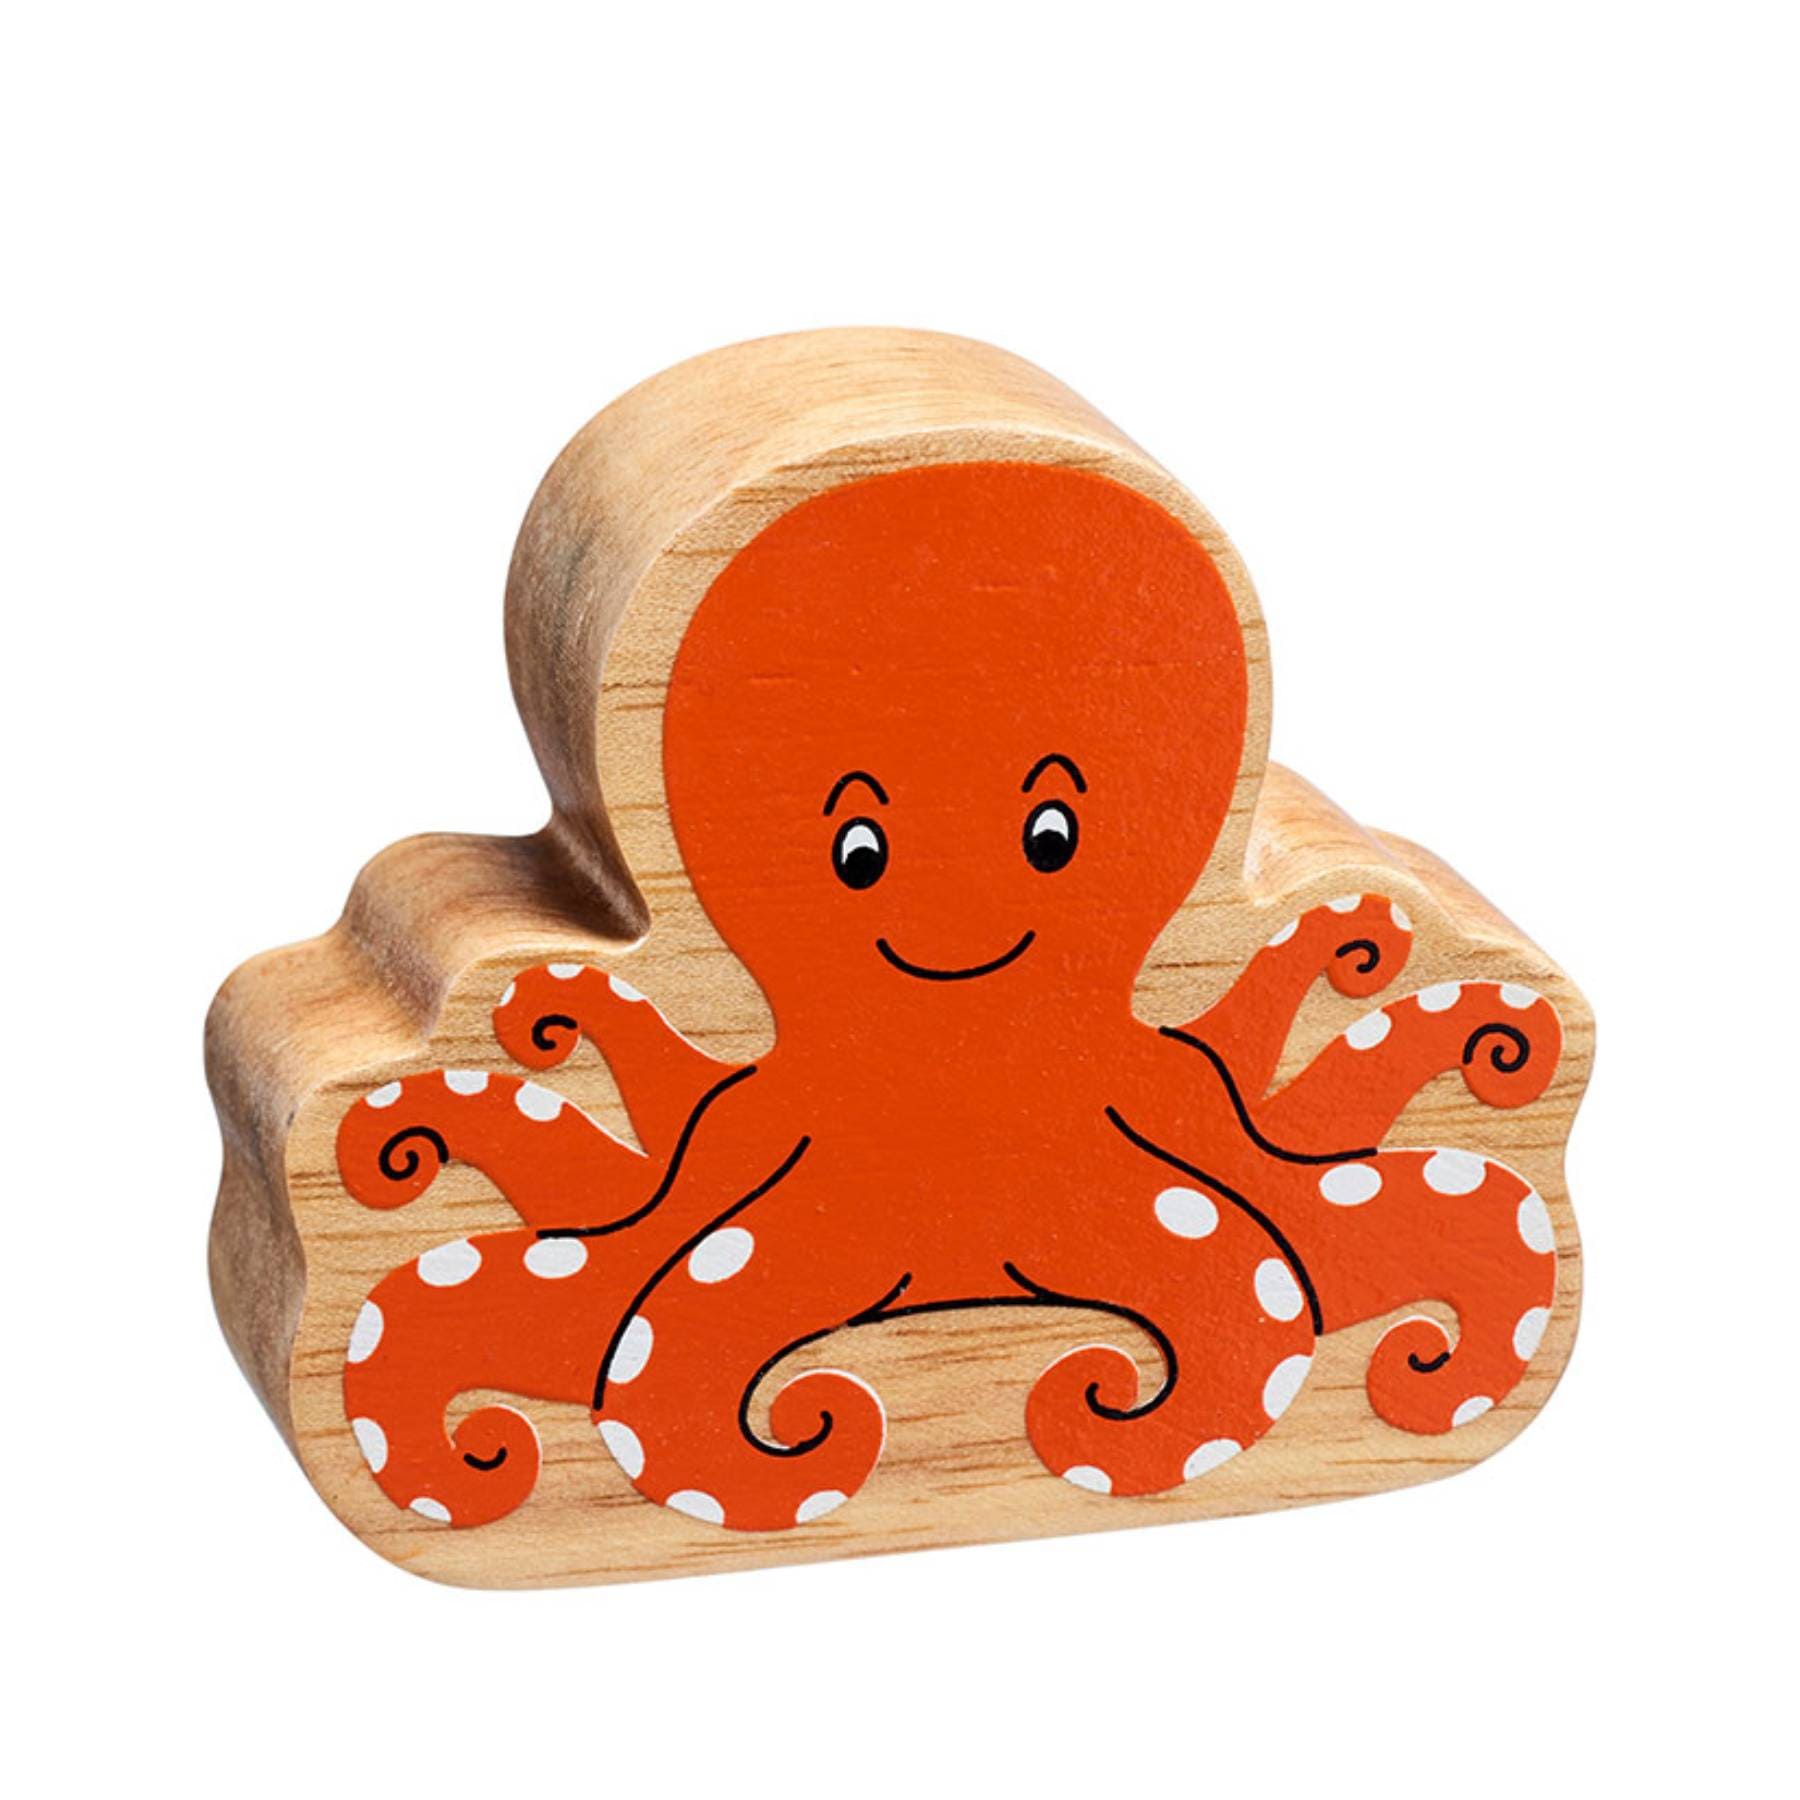 Wooden octopus figure